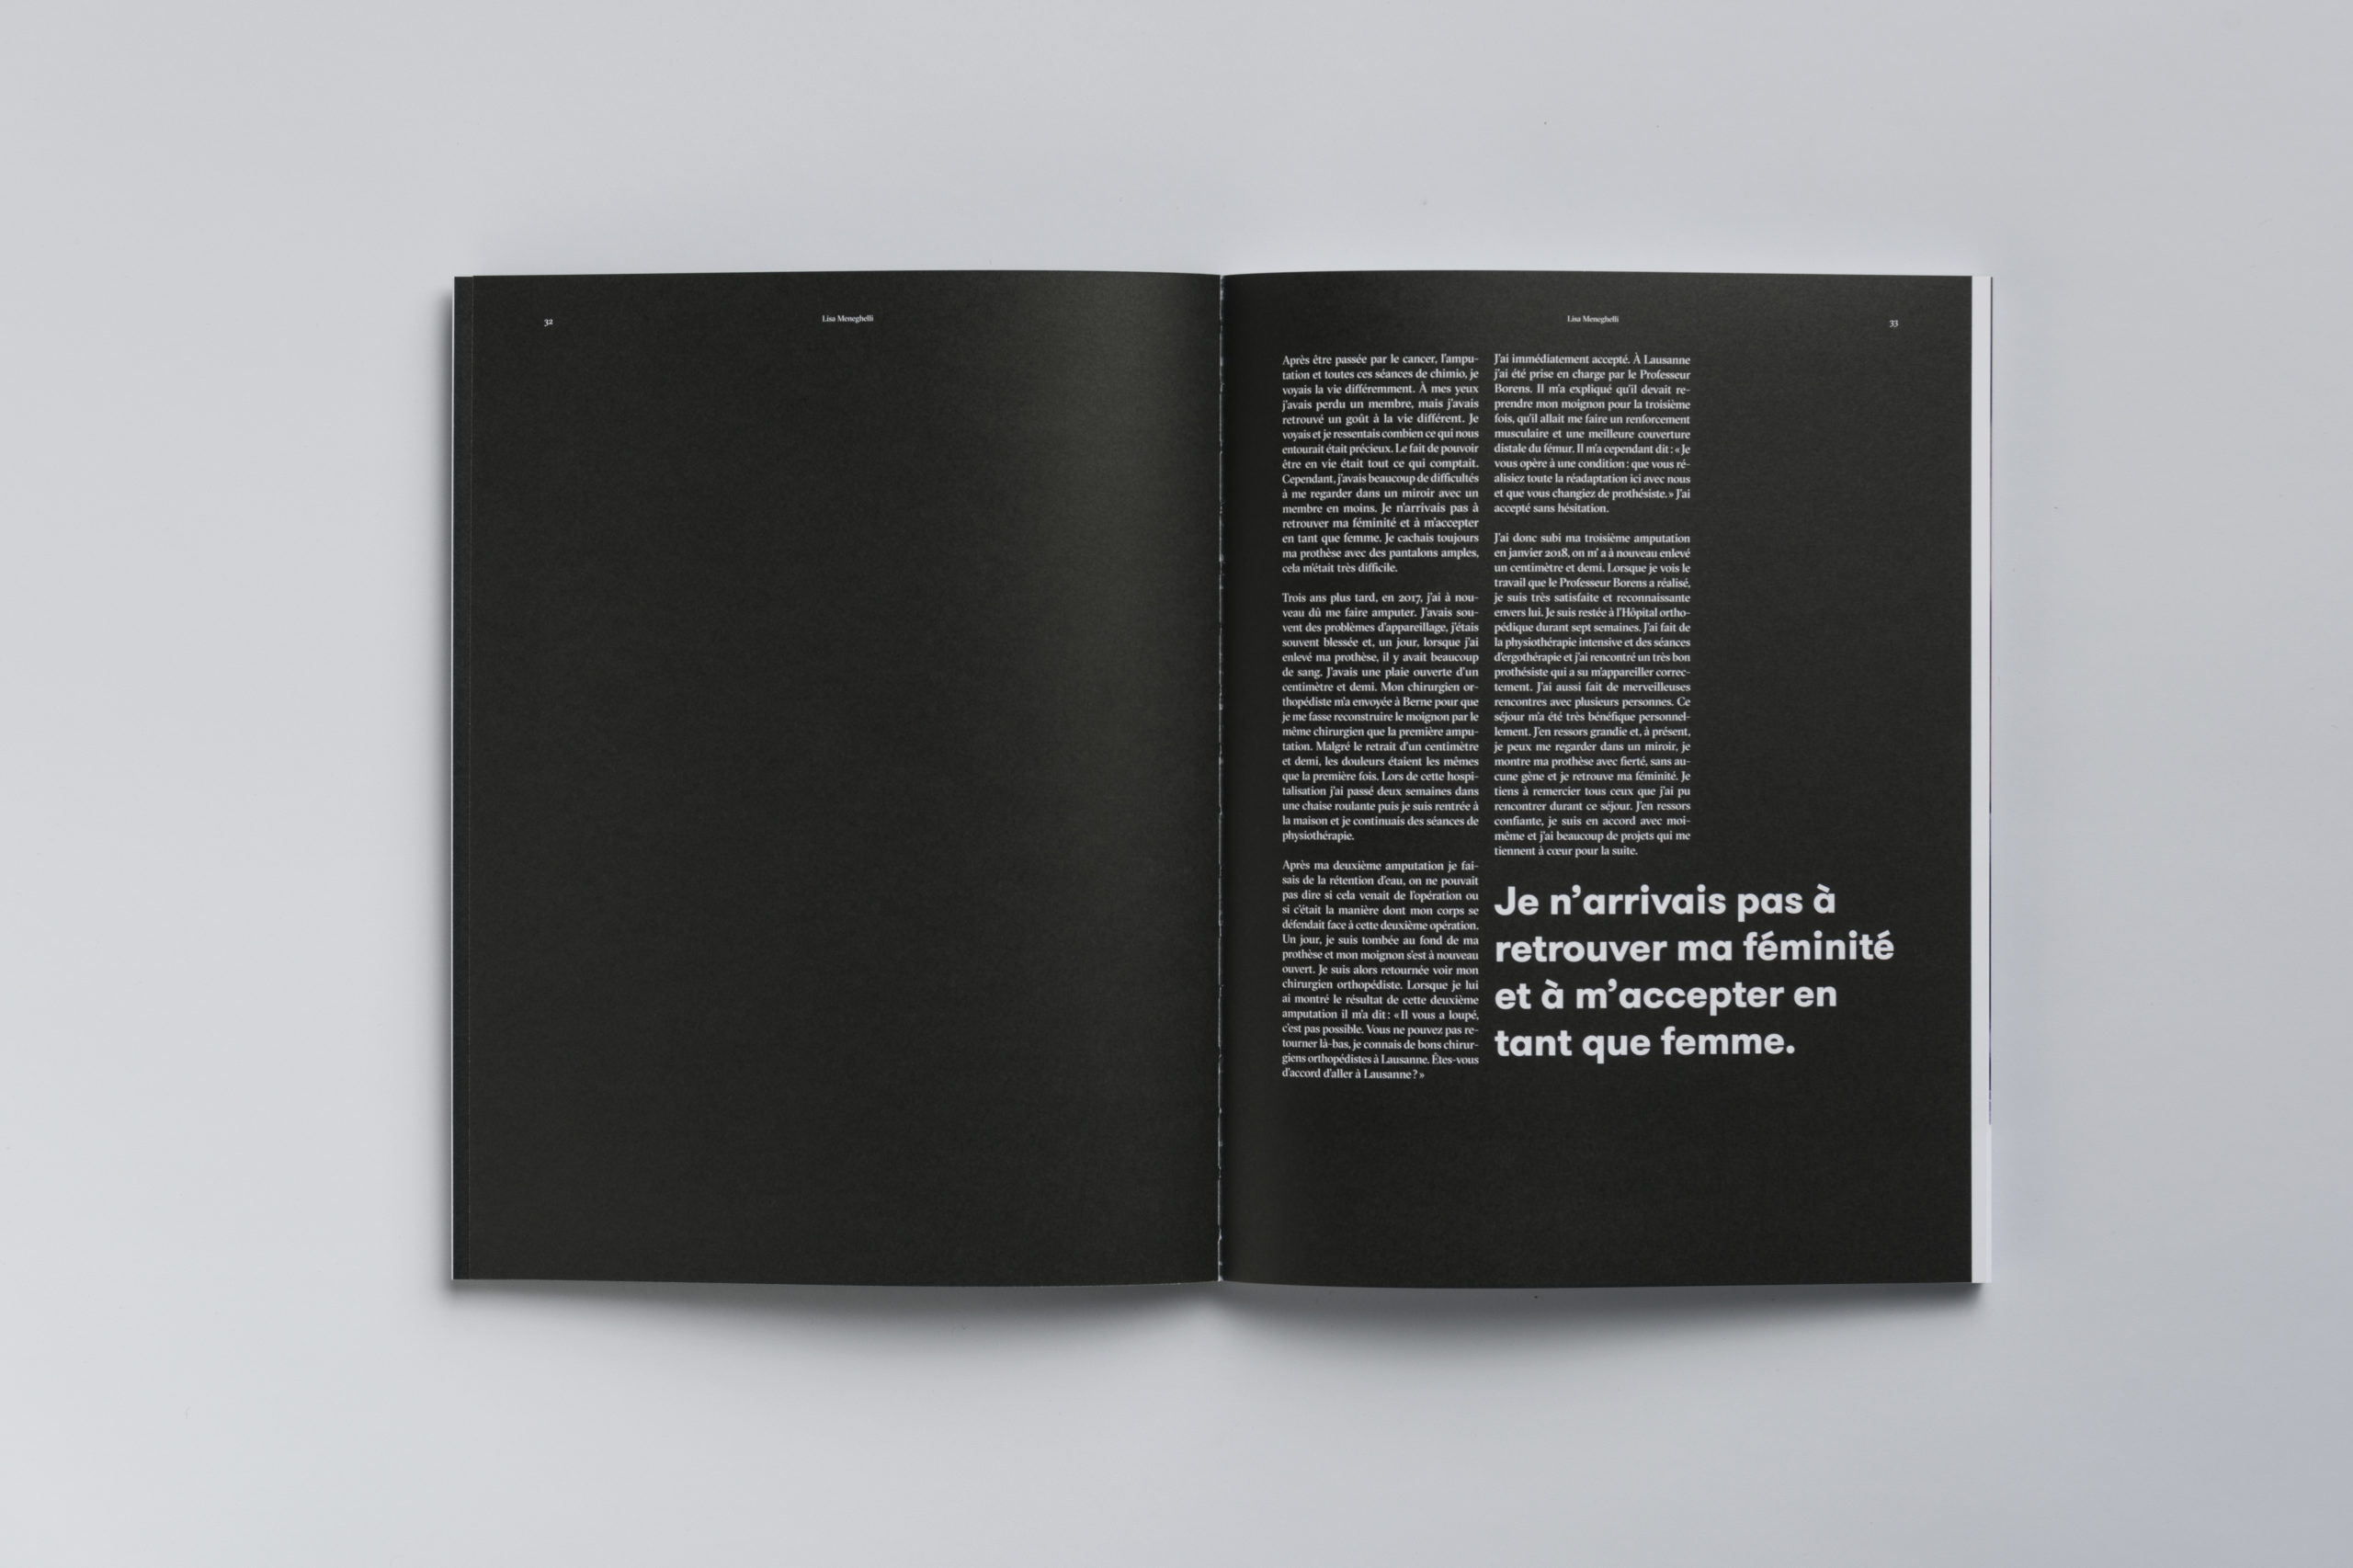 Double page du livre d'arrache-pied. A gauche, la page est vierge, sur papier noir, à droite, il y a portrait écrit, avec une exergue du texte. Le fond de la page est noir.